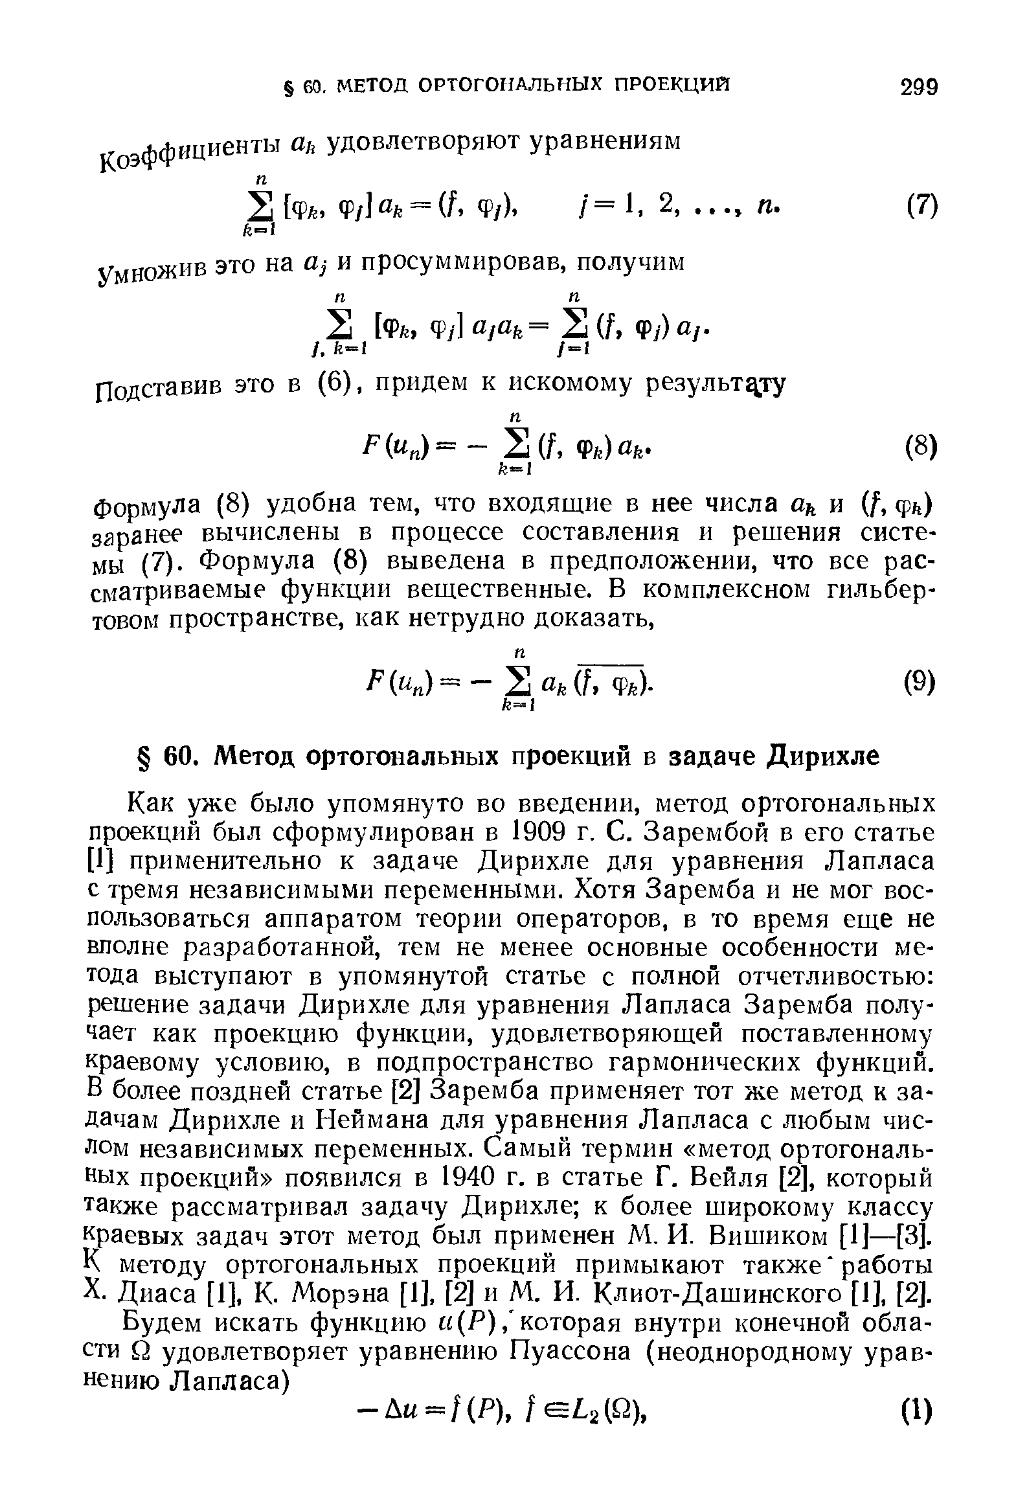 § 60. Метод ортогональных проекций в задаче Дирихле